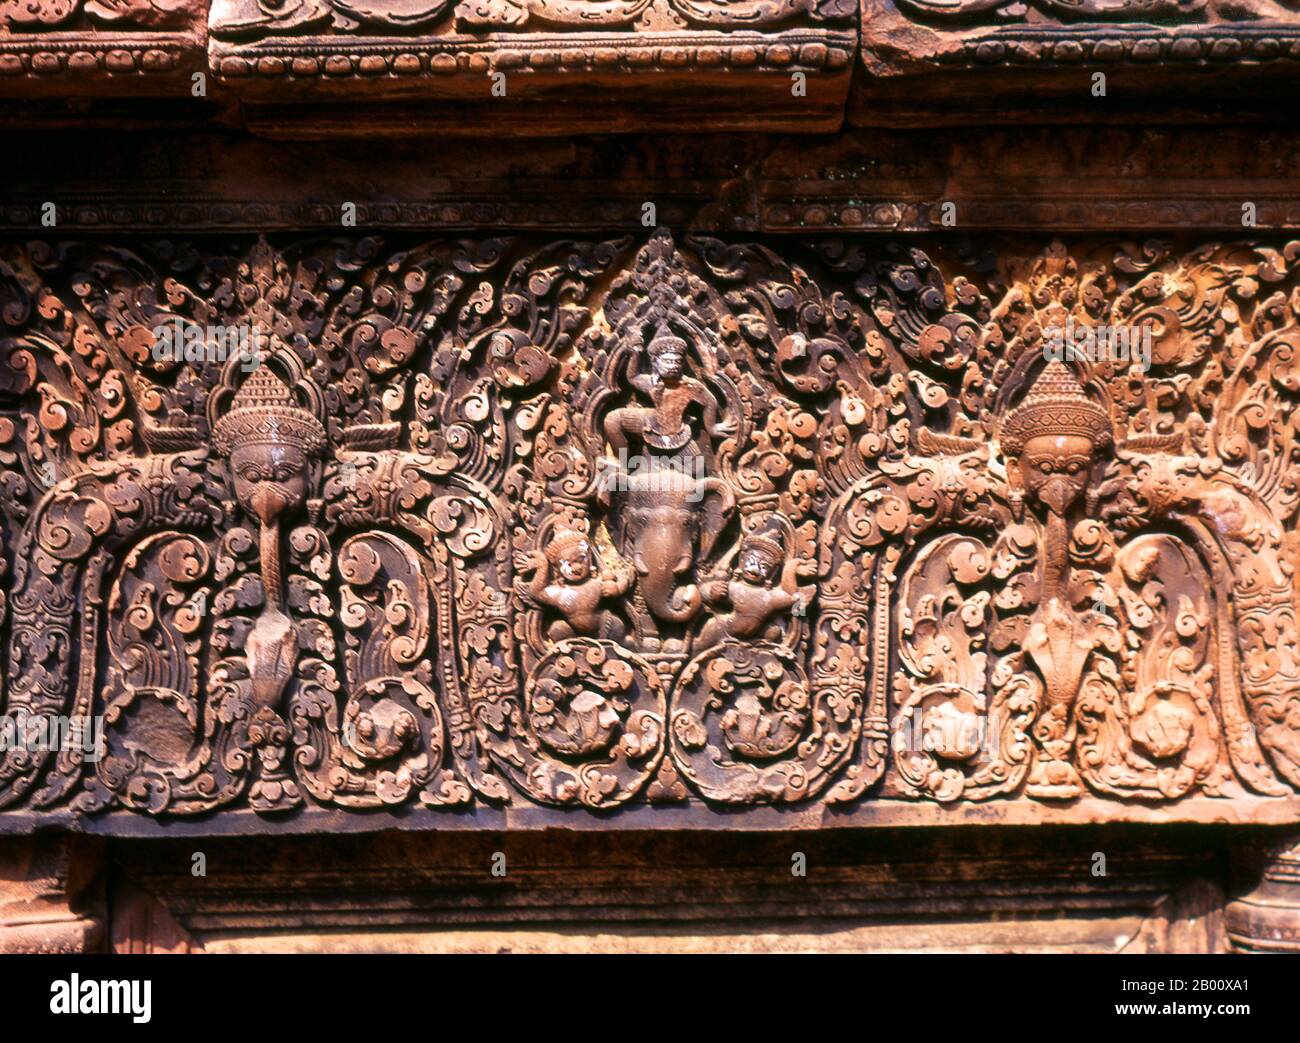 Kambodscha: Banteay Srei (Zitadelle der Frauen), in der Nähe von Angkor. Banteay Srei (oder Banteay Srey) ist ein kambodschanischer Tempel aus dem 10. Jahrhundert, der dem Hindu-gott Shiva gewidmet ist und im Nordosten der Hauptgruppe von Tempeln in Angkor liegt. Banteay Srei ist weitgehend aus rotem Sandstein gebaut, ein Medium, das sich für die aufwendigen dekorativen Wandschnitzereien eignet, die noch heute zu beobachten sind. Banteay Srei wird manchmal als das "Juwel der Khmer-Kunst" bezeichnet. Stockfoto